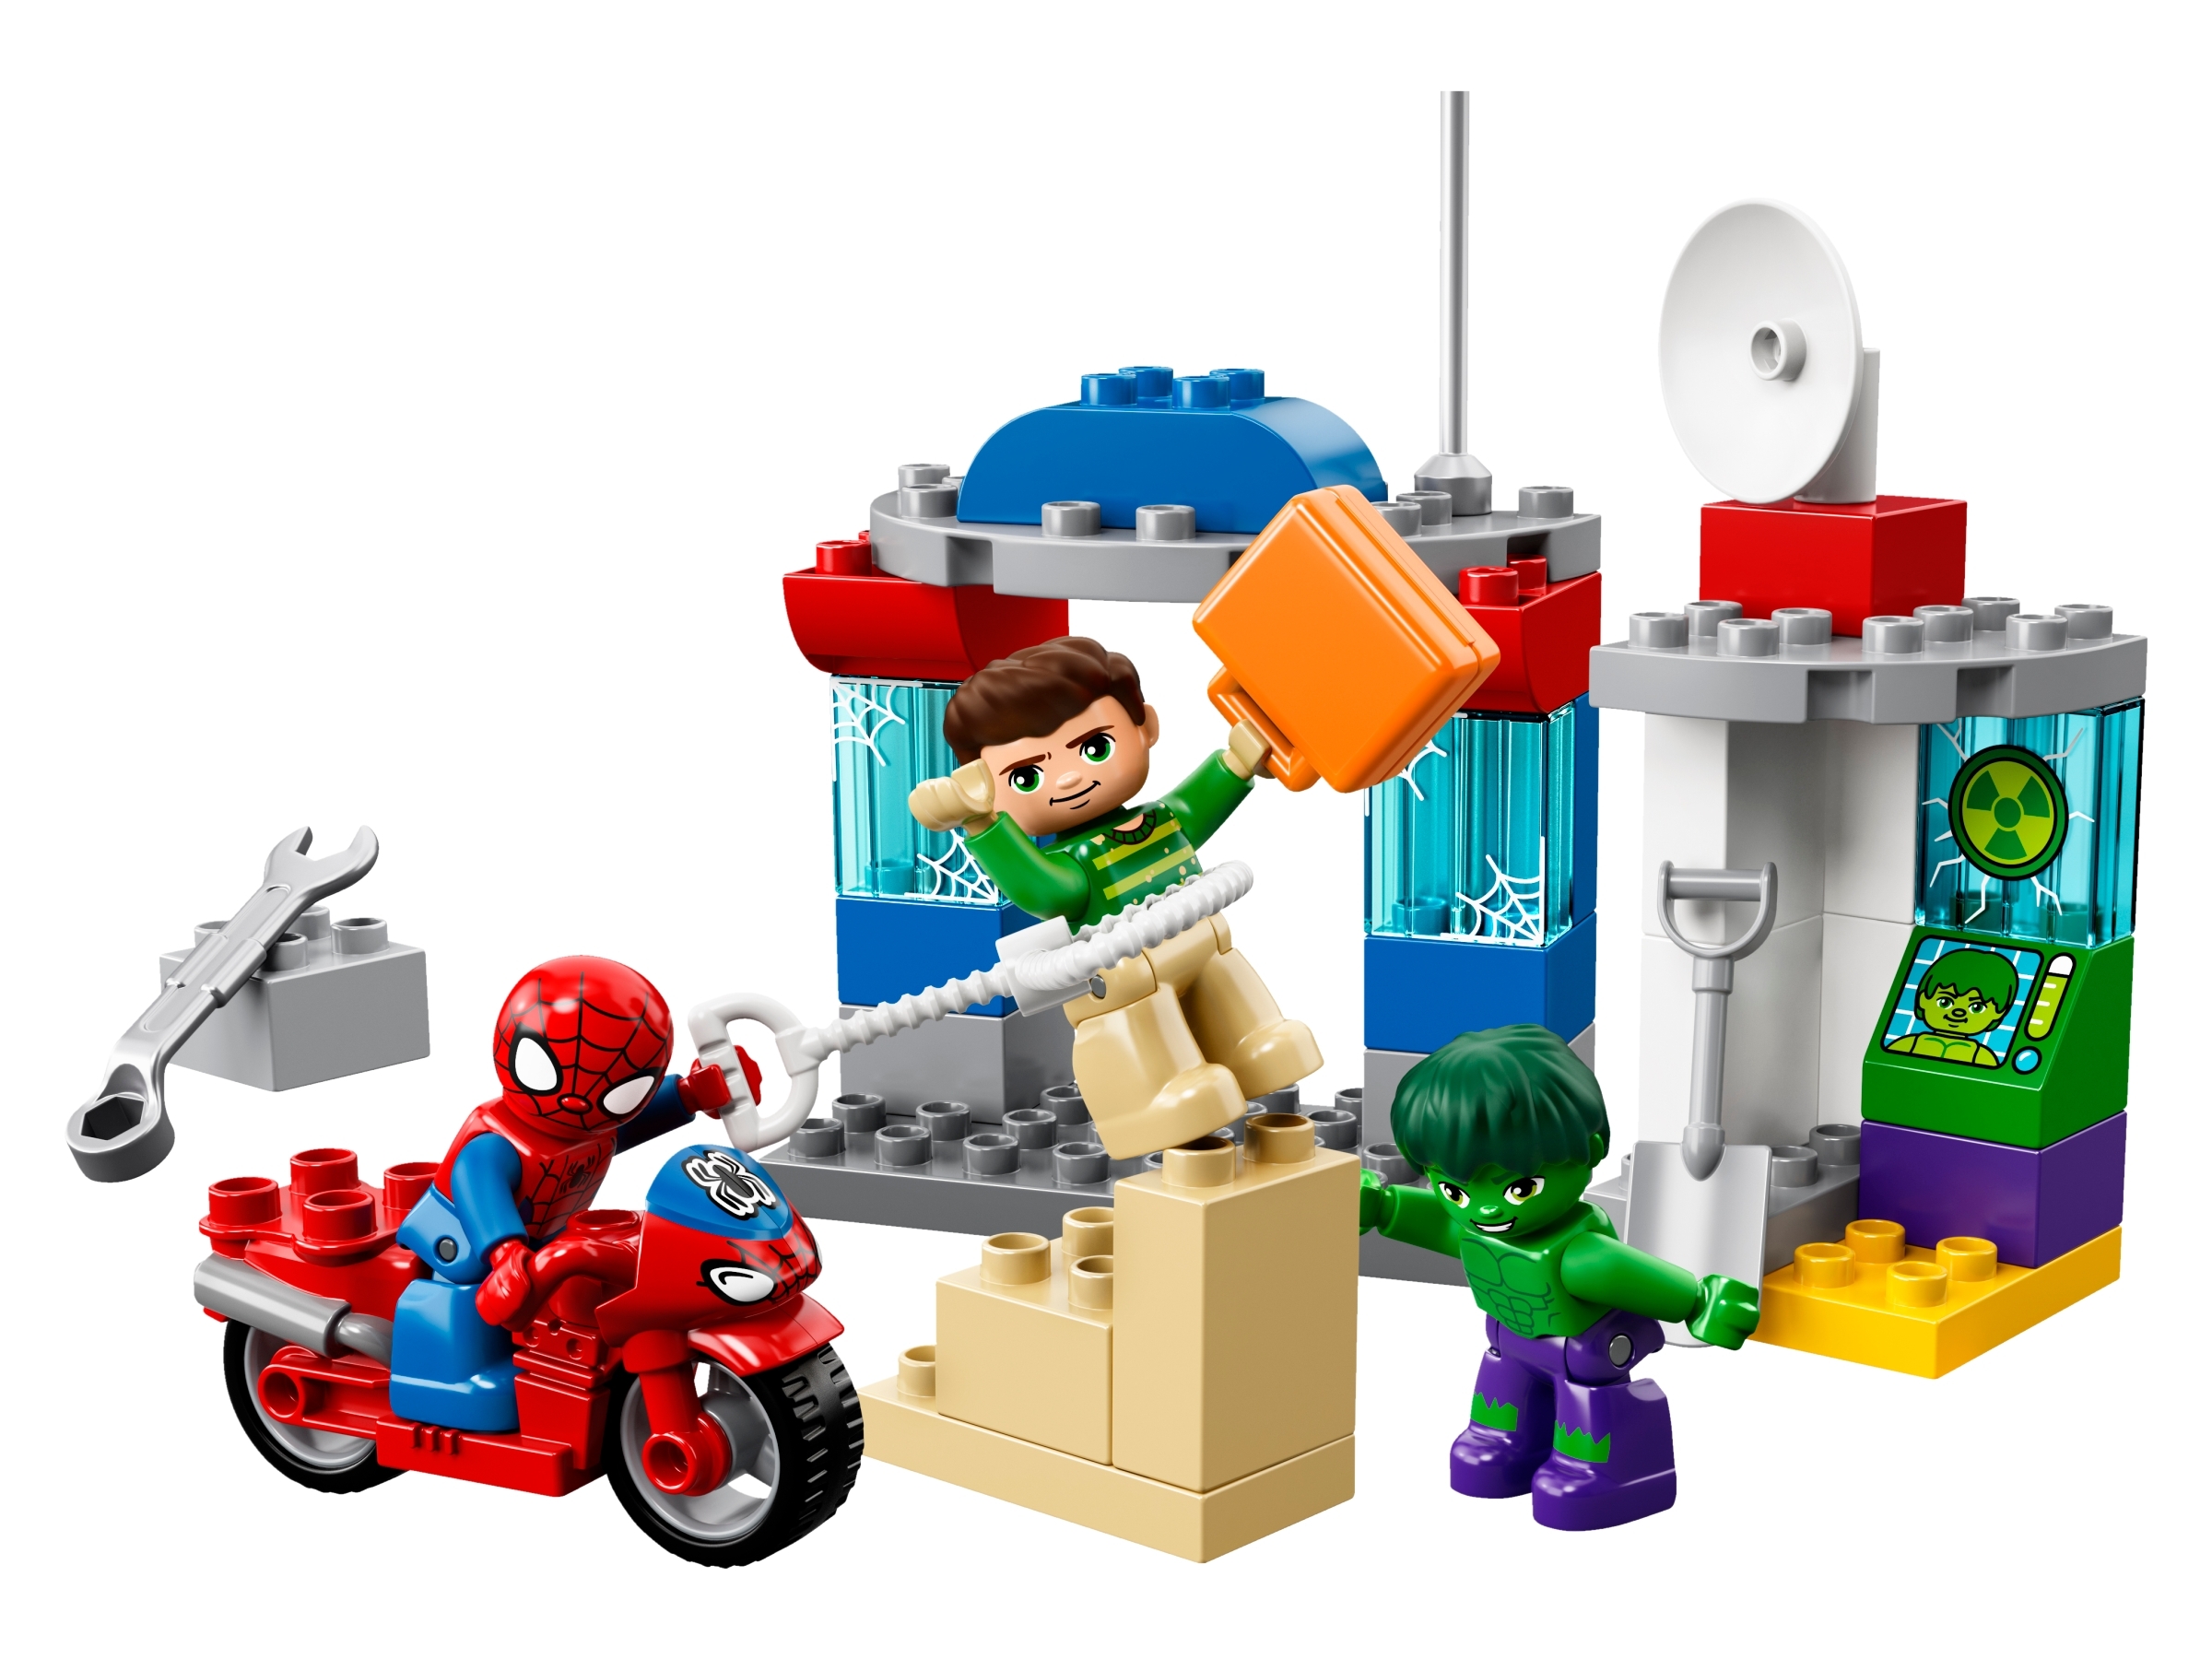 Spider-Man & Hulk 10876 | Marvel | Buy online at the Official LEGO® Shop